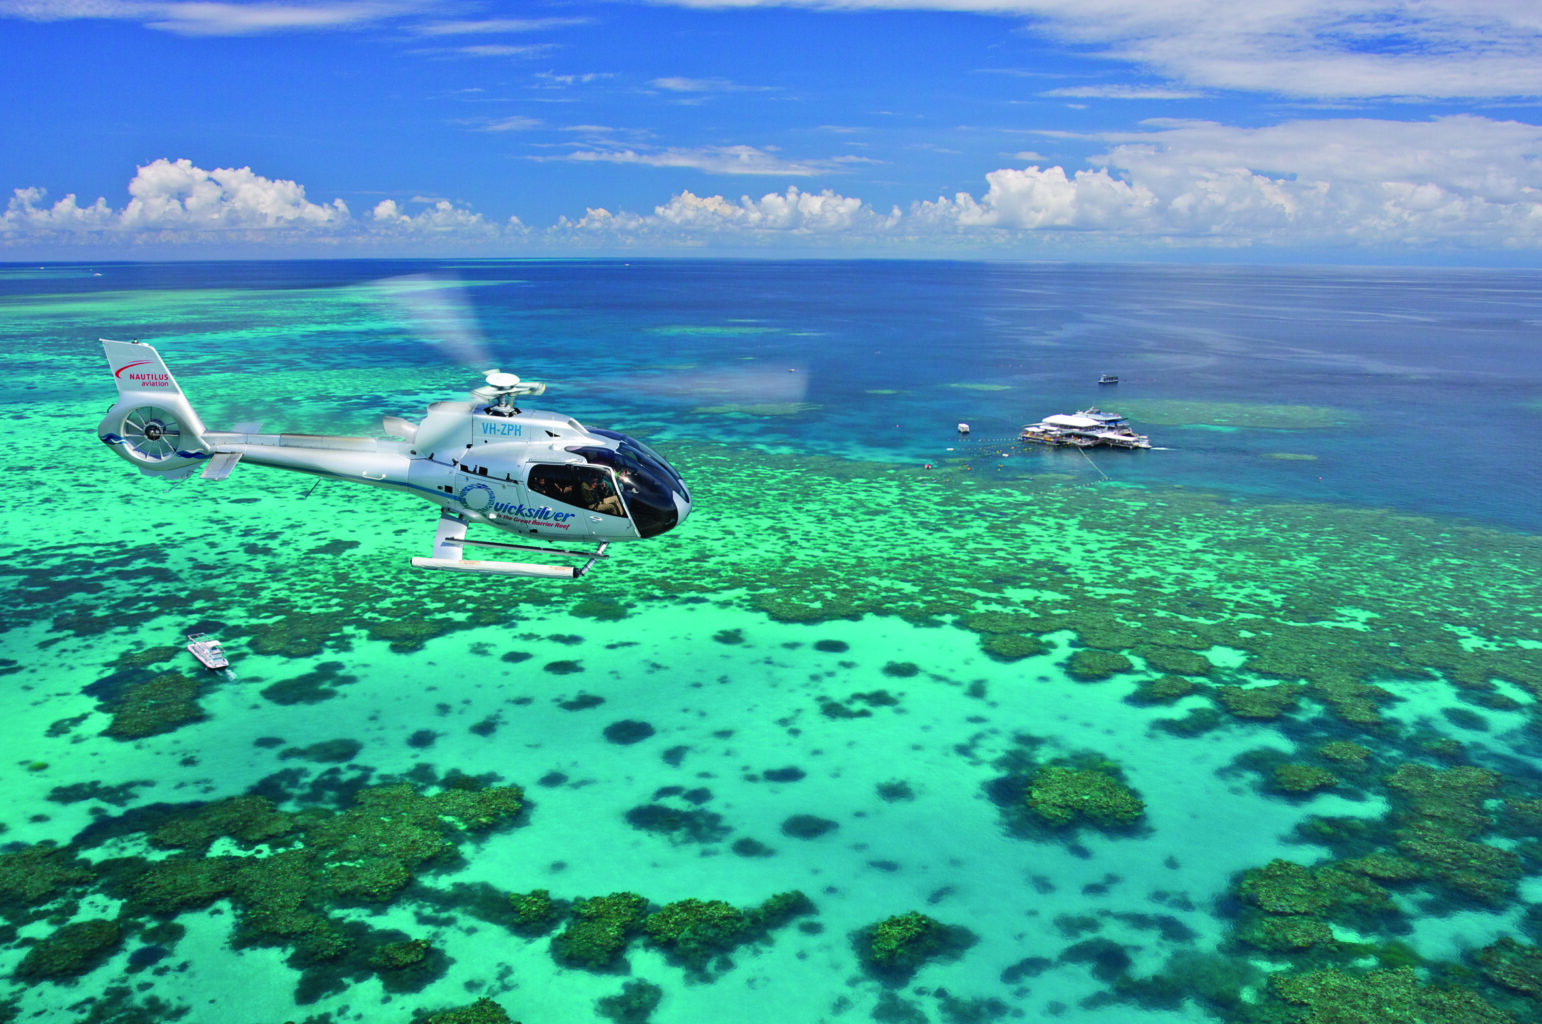 只有银梭号（Quicksilver）能带您前往位于著名的阿金考特礁（Agincourt Reef）上的珊瑚礁活动平台——这是一个位于澳大利亚大陆架边缘的壮观带状珊瑚礁。选择与珊瑚礁观光直升机飞行相结合的套餐，从空中和水下探索大堡礁的梦幻之美。从凯恩斯出发，前往道格拉斯港（Port Douglas），沿途经过澳大利亚风景如画的公路——大堡礁海岸自驾线路（Great Barrier Reef Drive）。